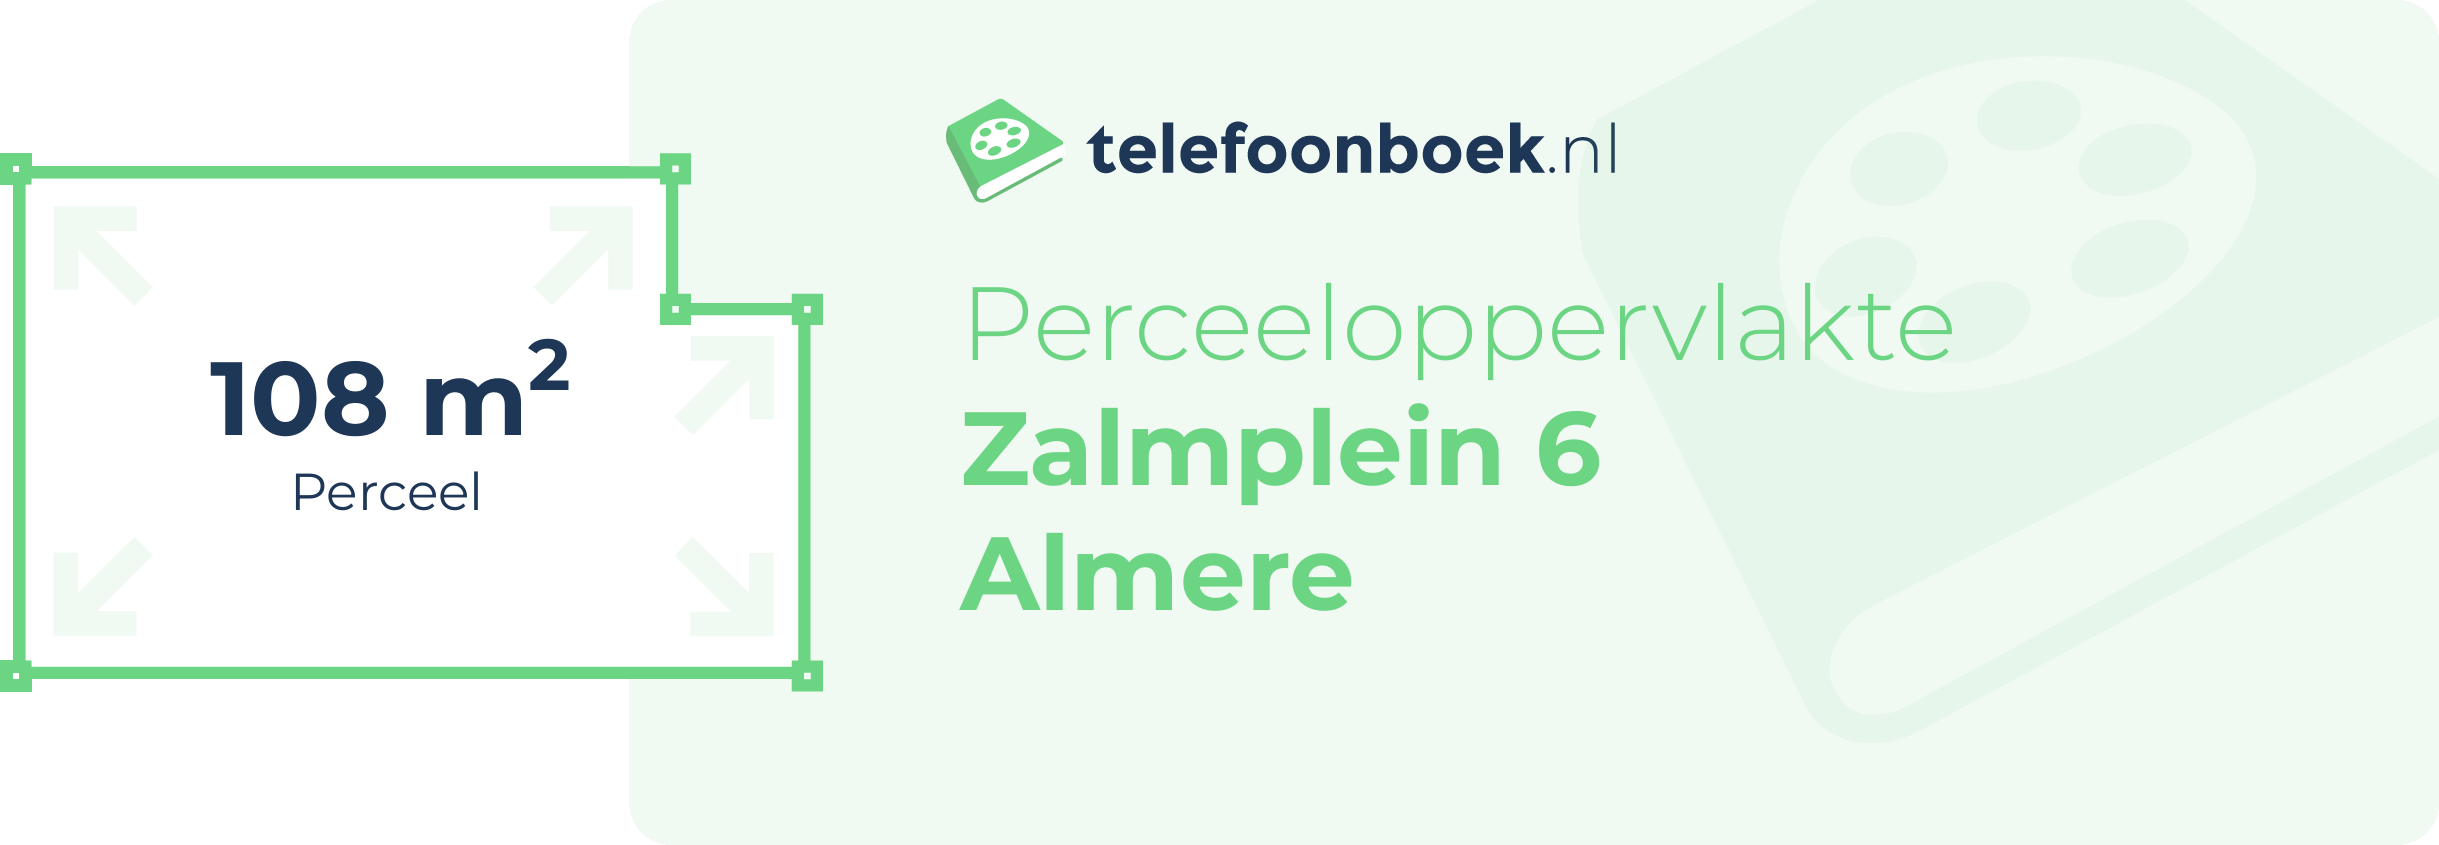 Perceeloppervlakte Zalmplein 6 Almere